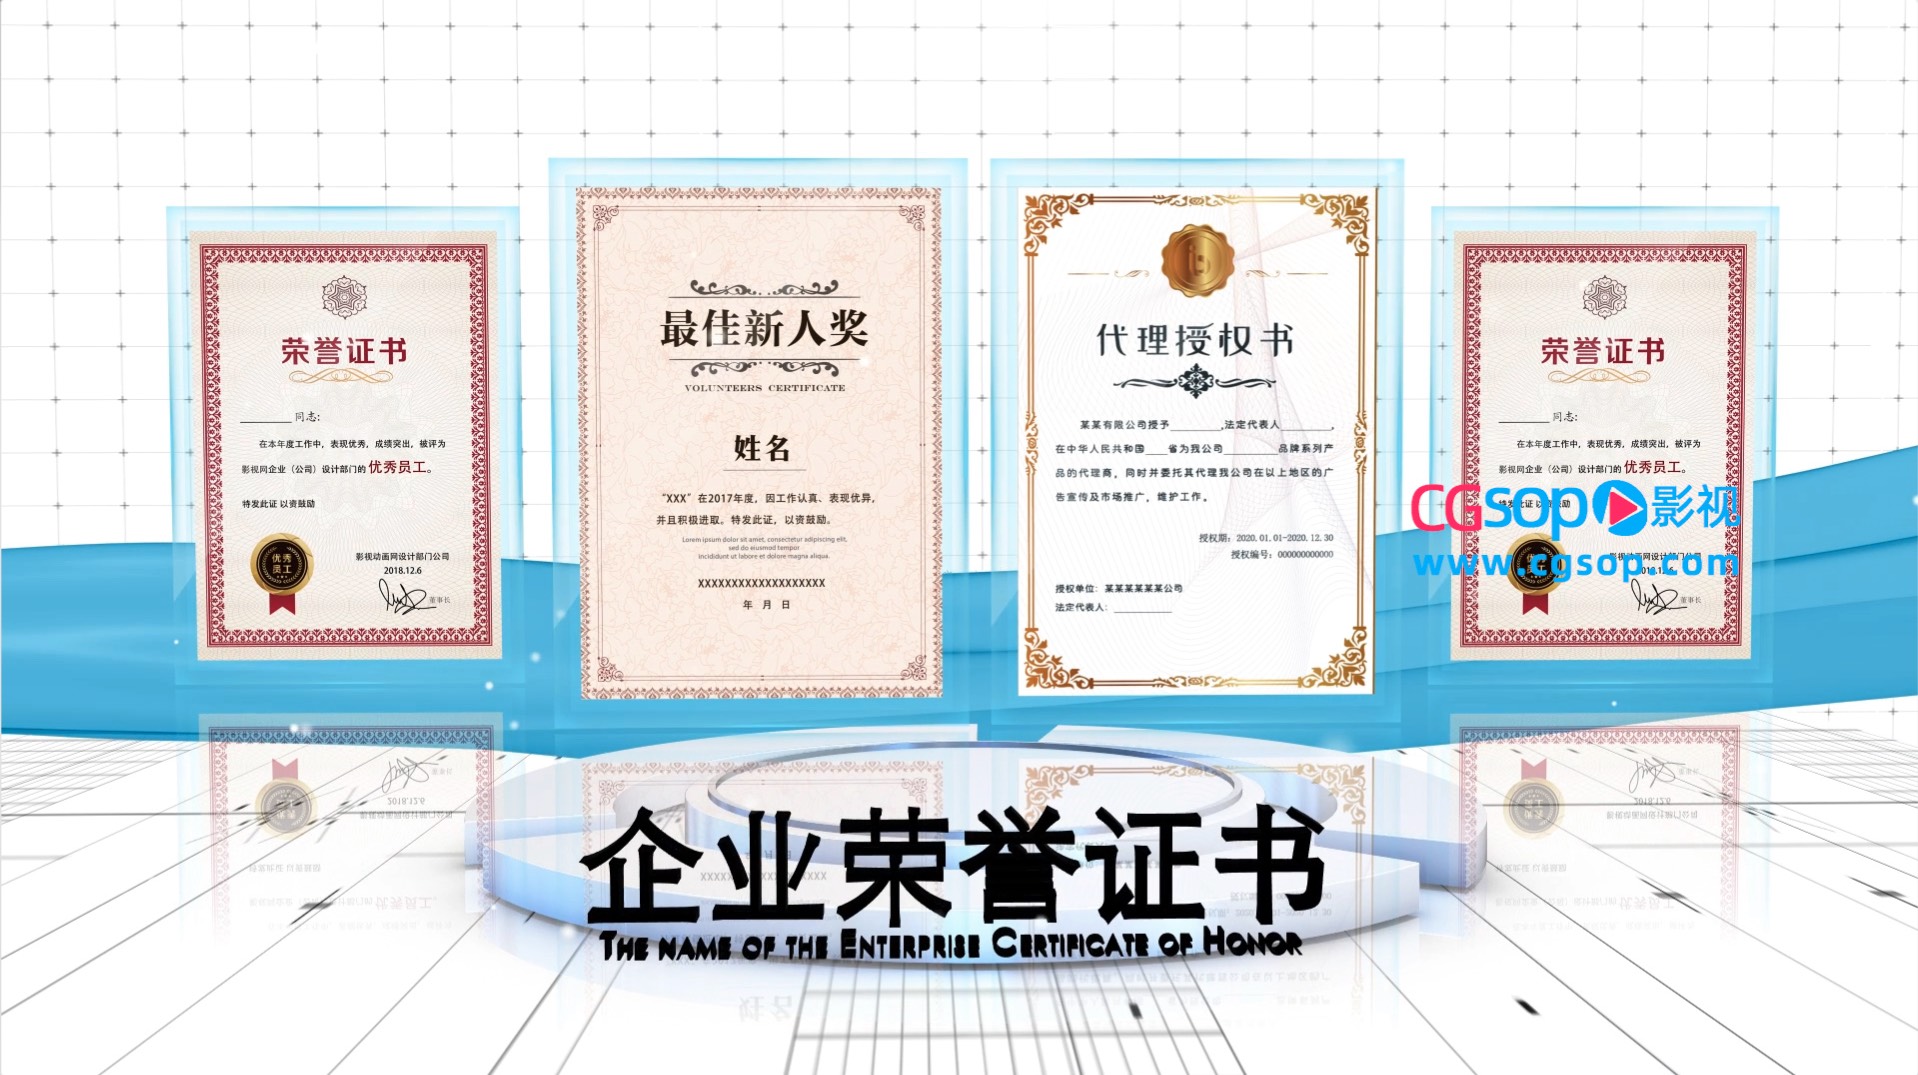 E3D企业荣誉证书图文展示AE模板